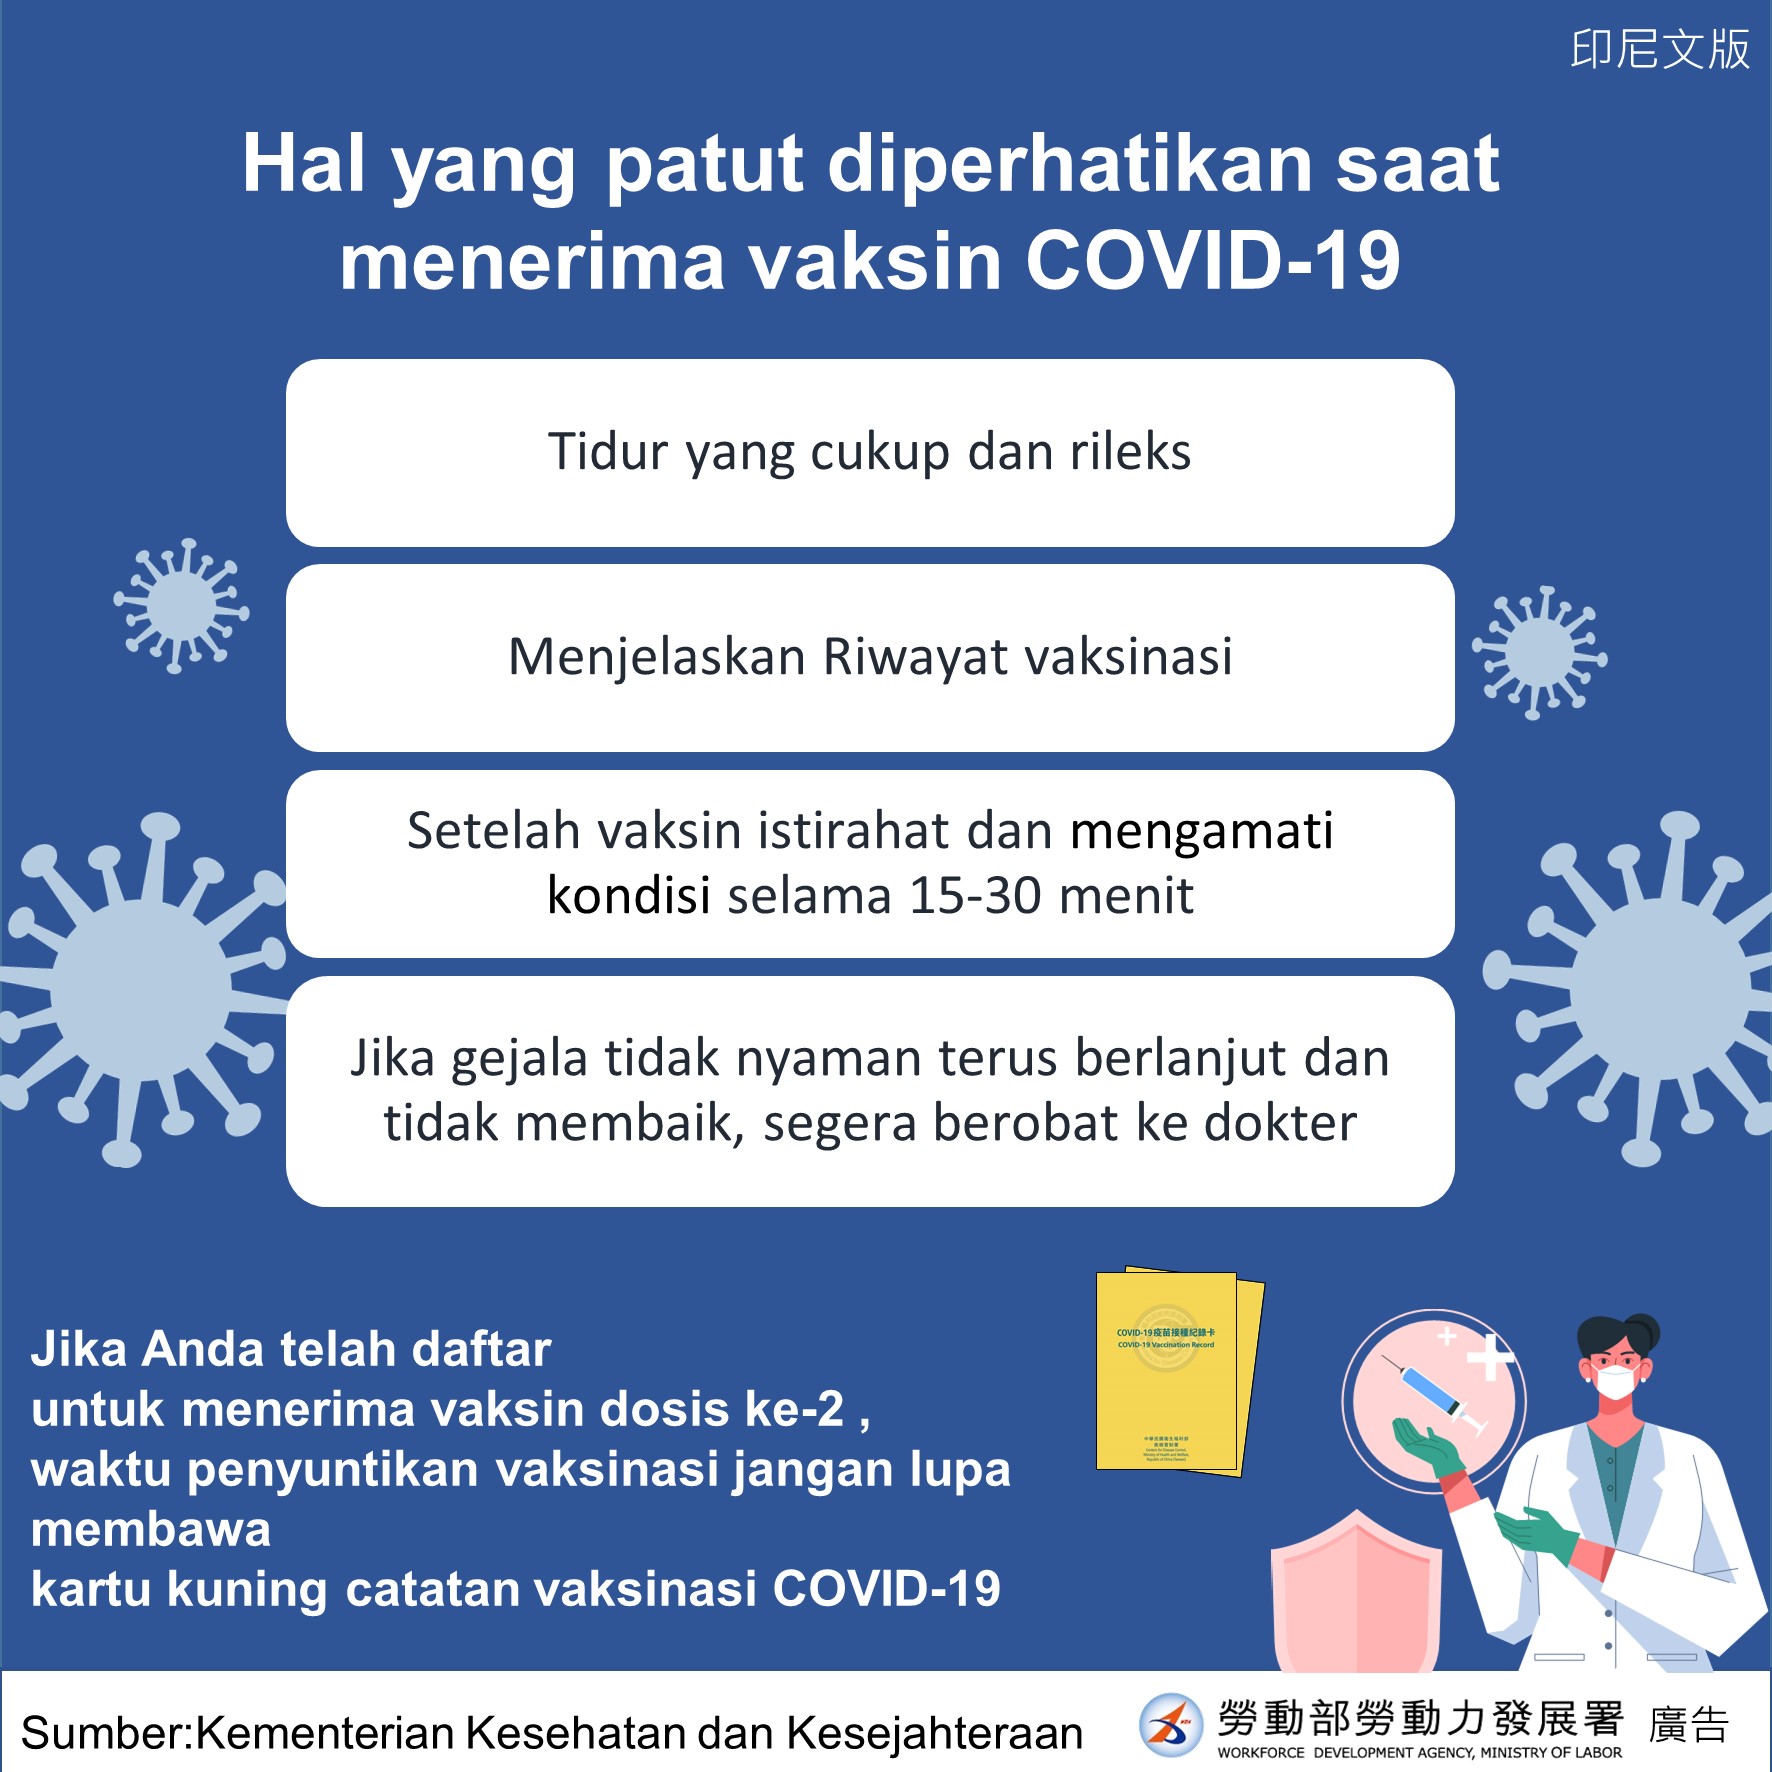 接種COVID-19疫苗注意事項-印尼文.JPG